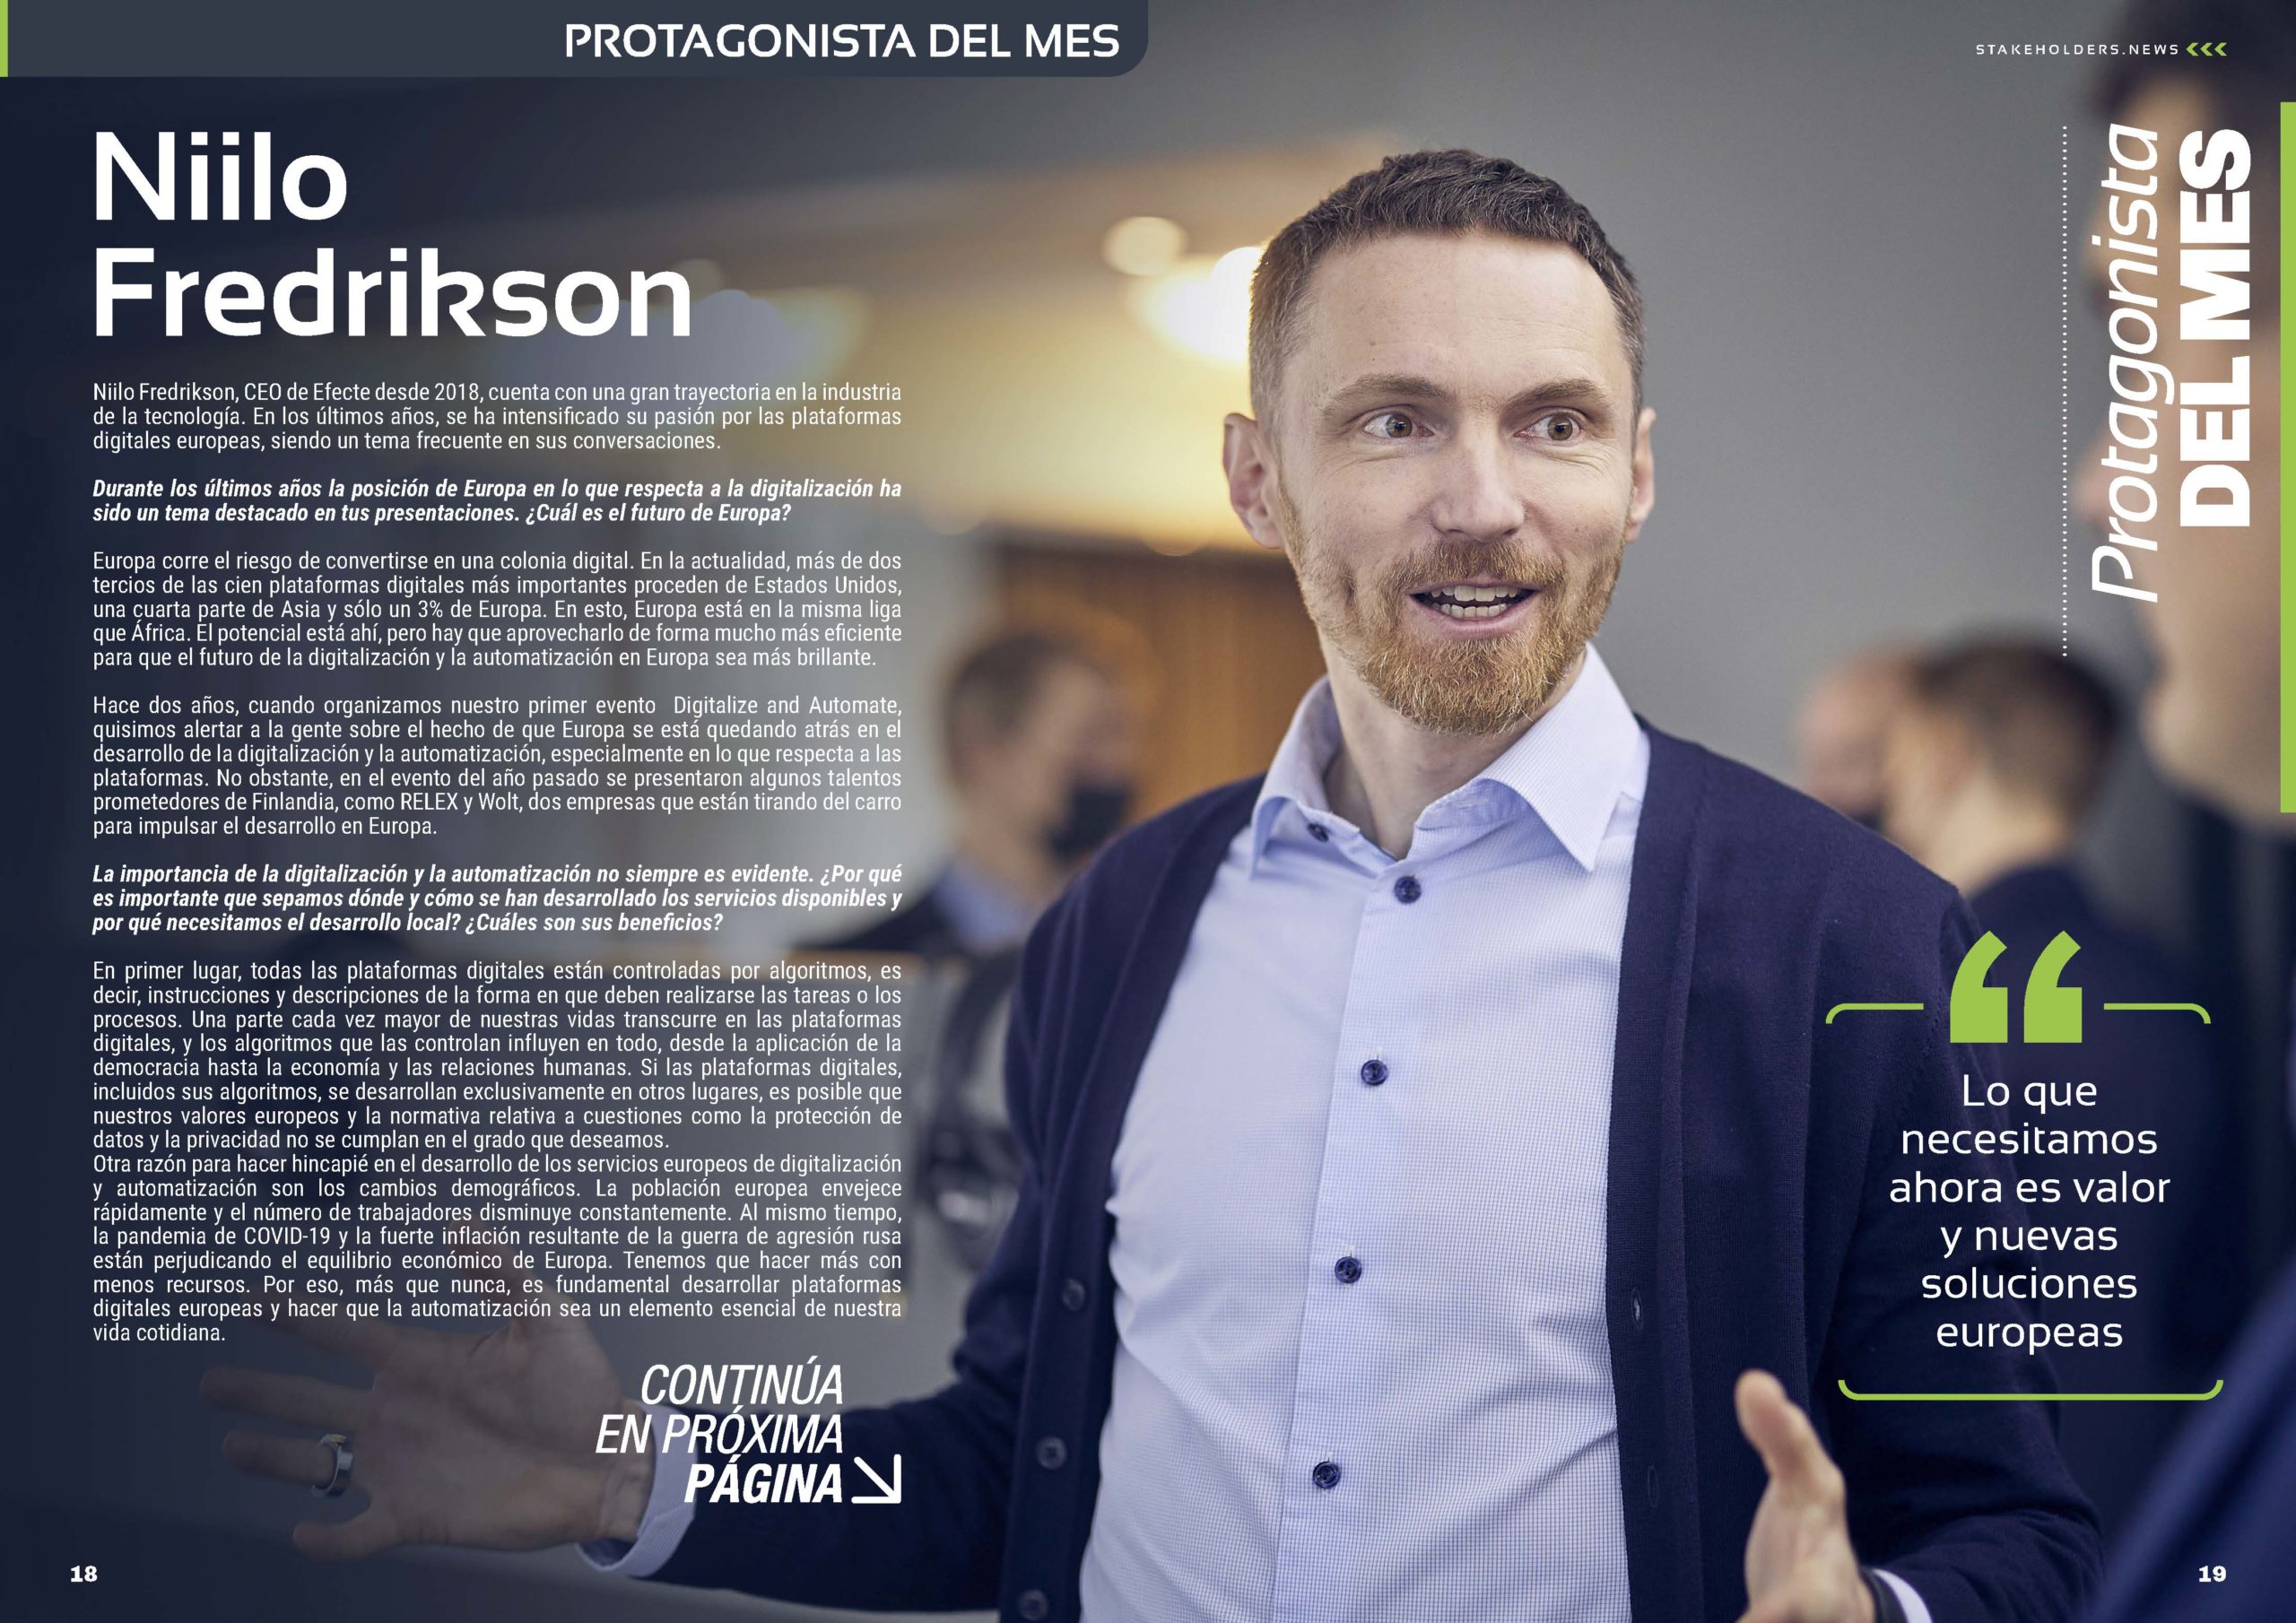 Niilo Fredrikson CEO de Efecte PLC “Protagonista del Mes” de la Rveista Stakeholders.news de septiembre de 2022